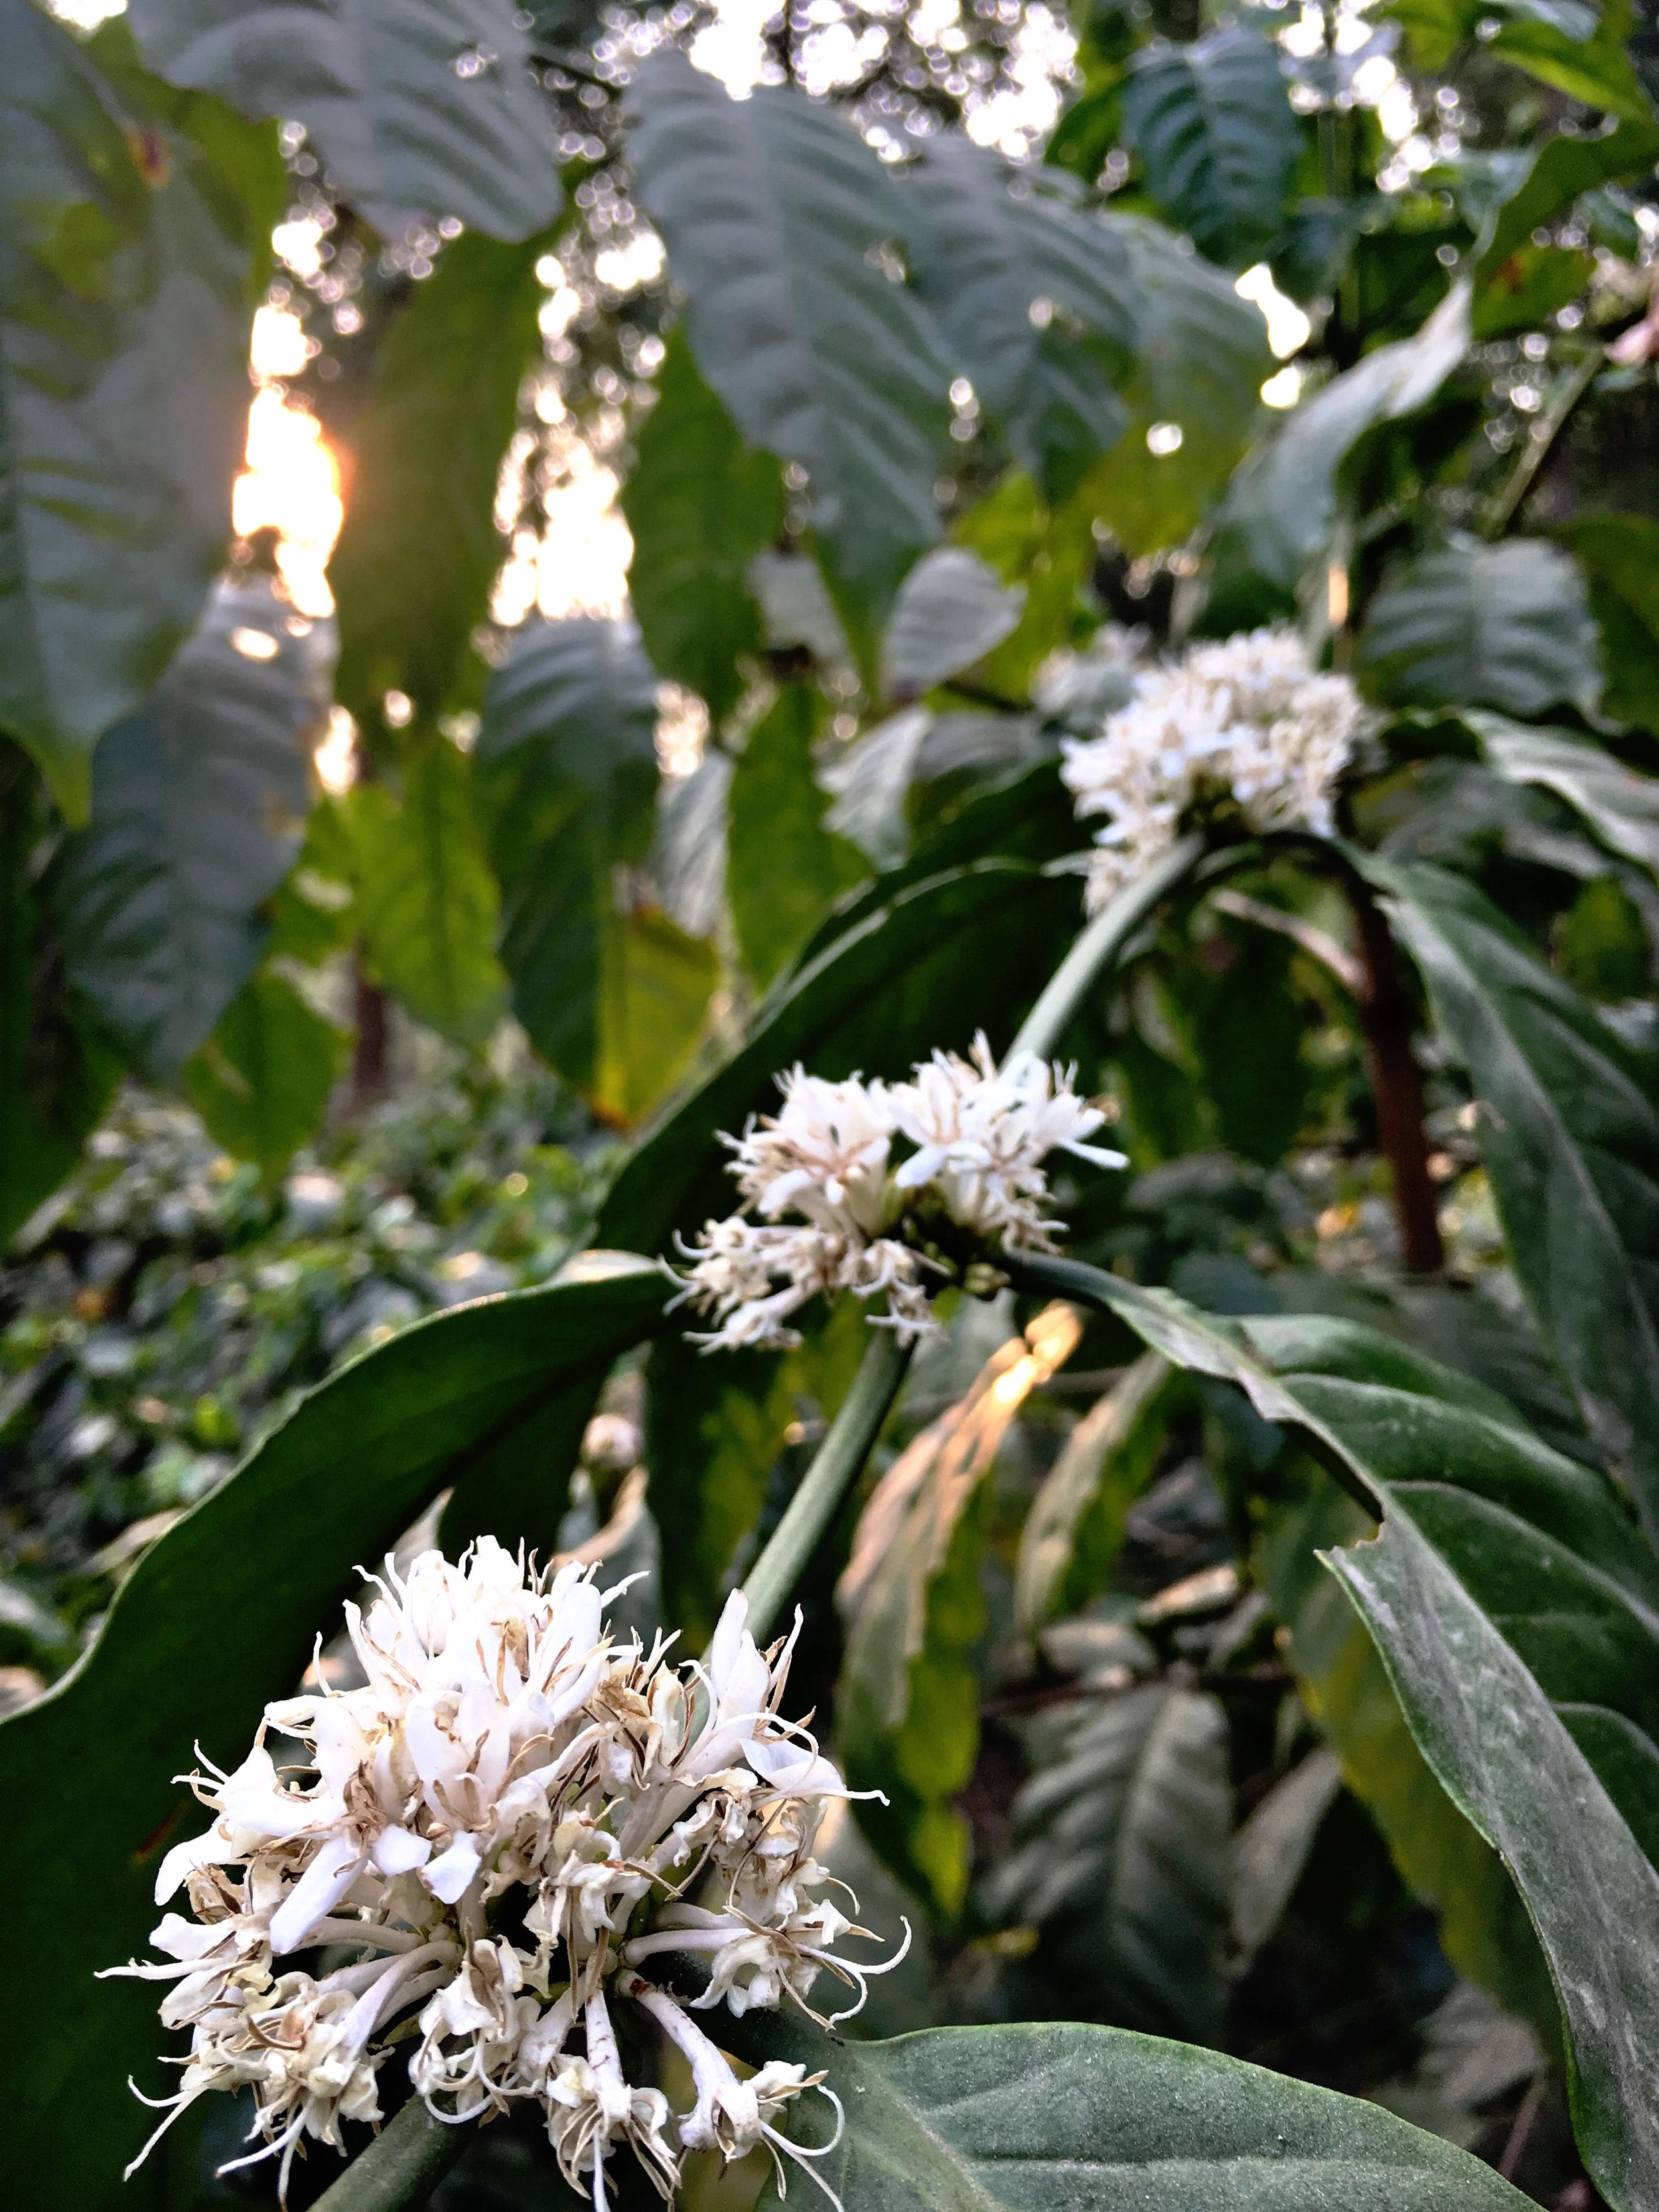 myanmar coffee flower.JPG